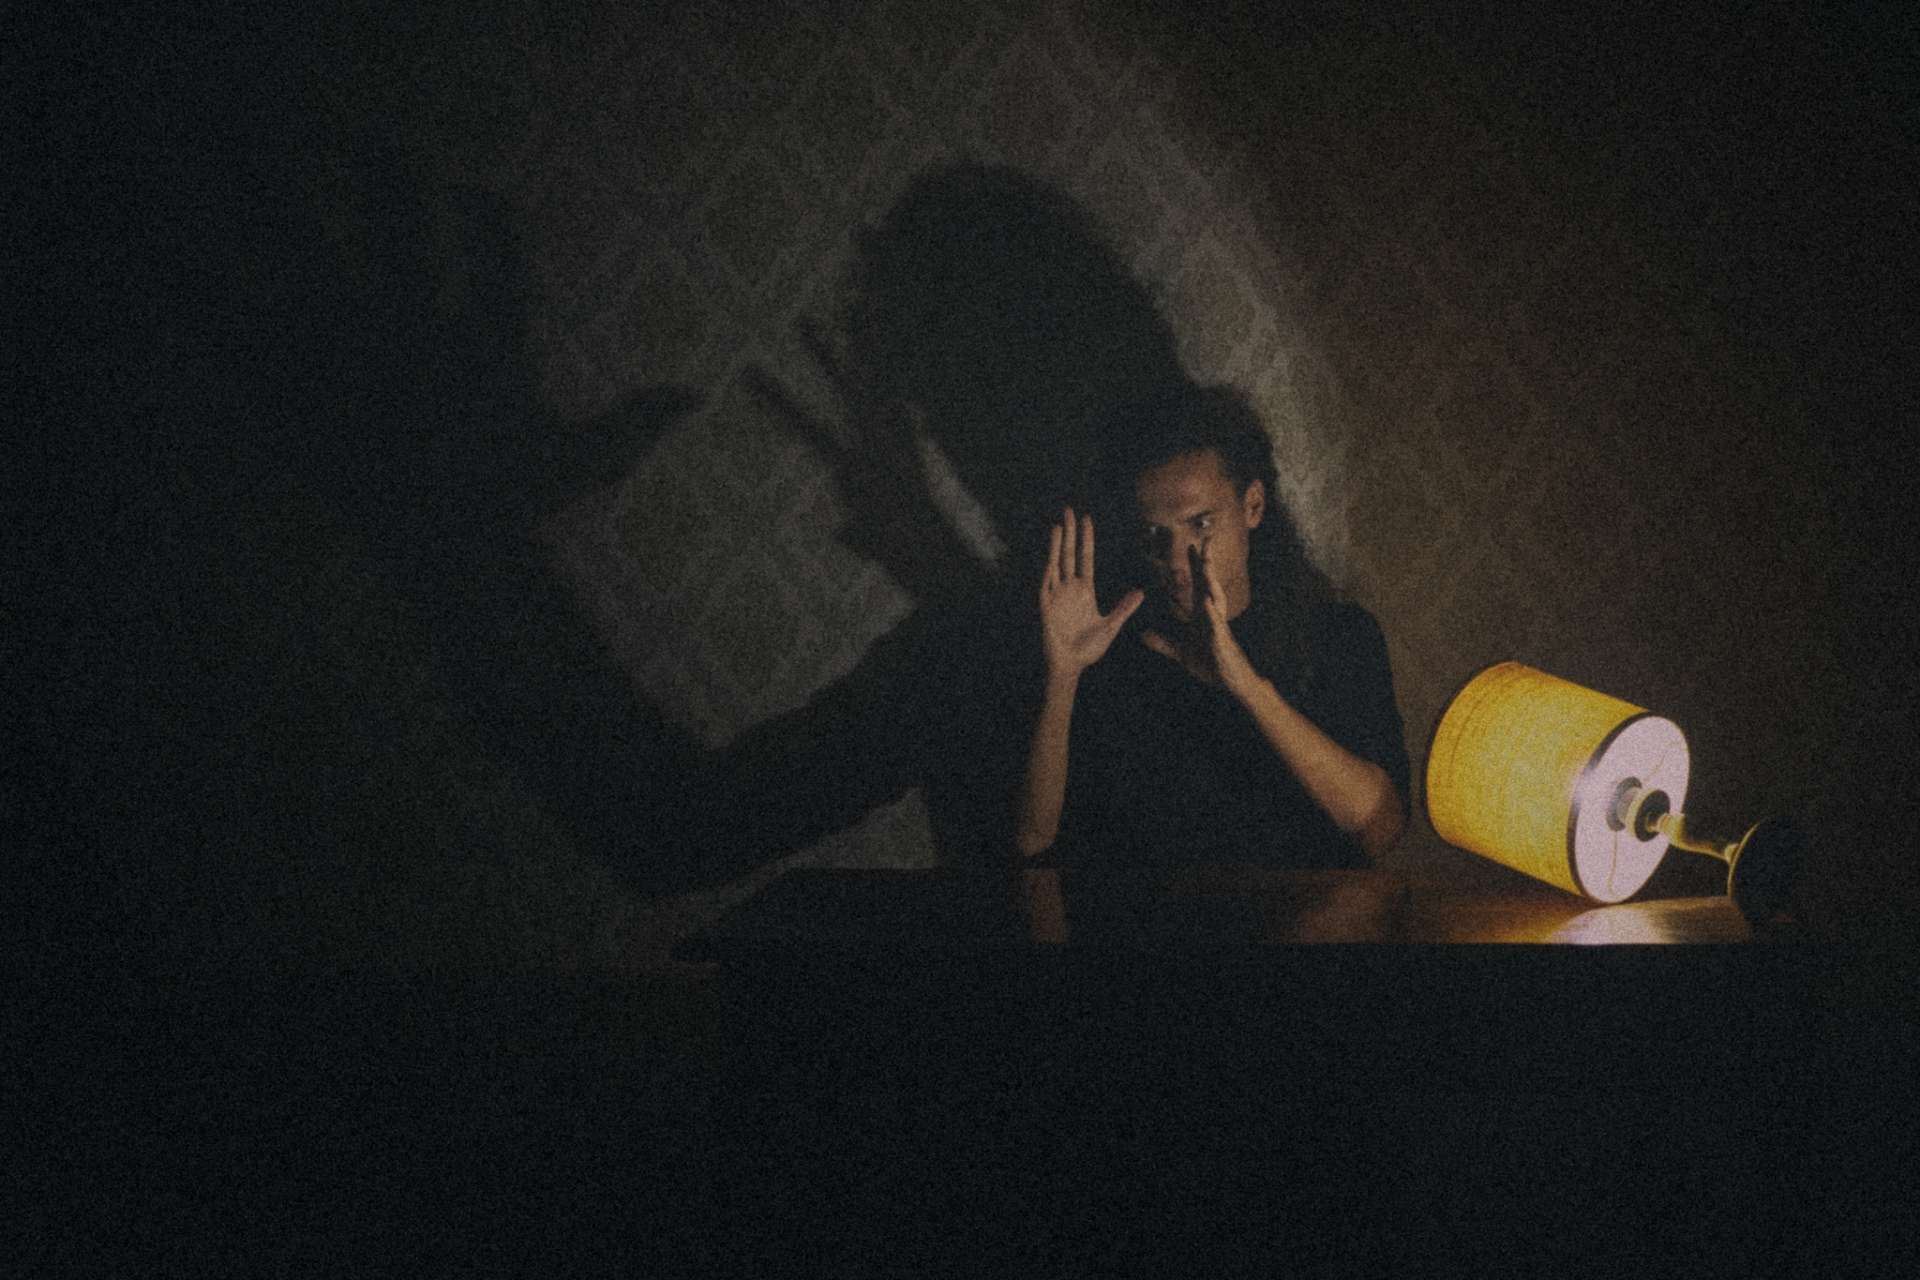 L'acteur est assis derrière une table et, à la lueur d'une petite lampe à abat-jour jaune couchée, forme une ombre avec ses mains et sa tête sur la tapisserie derrière lui.